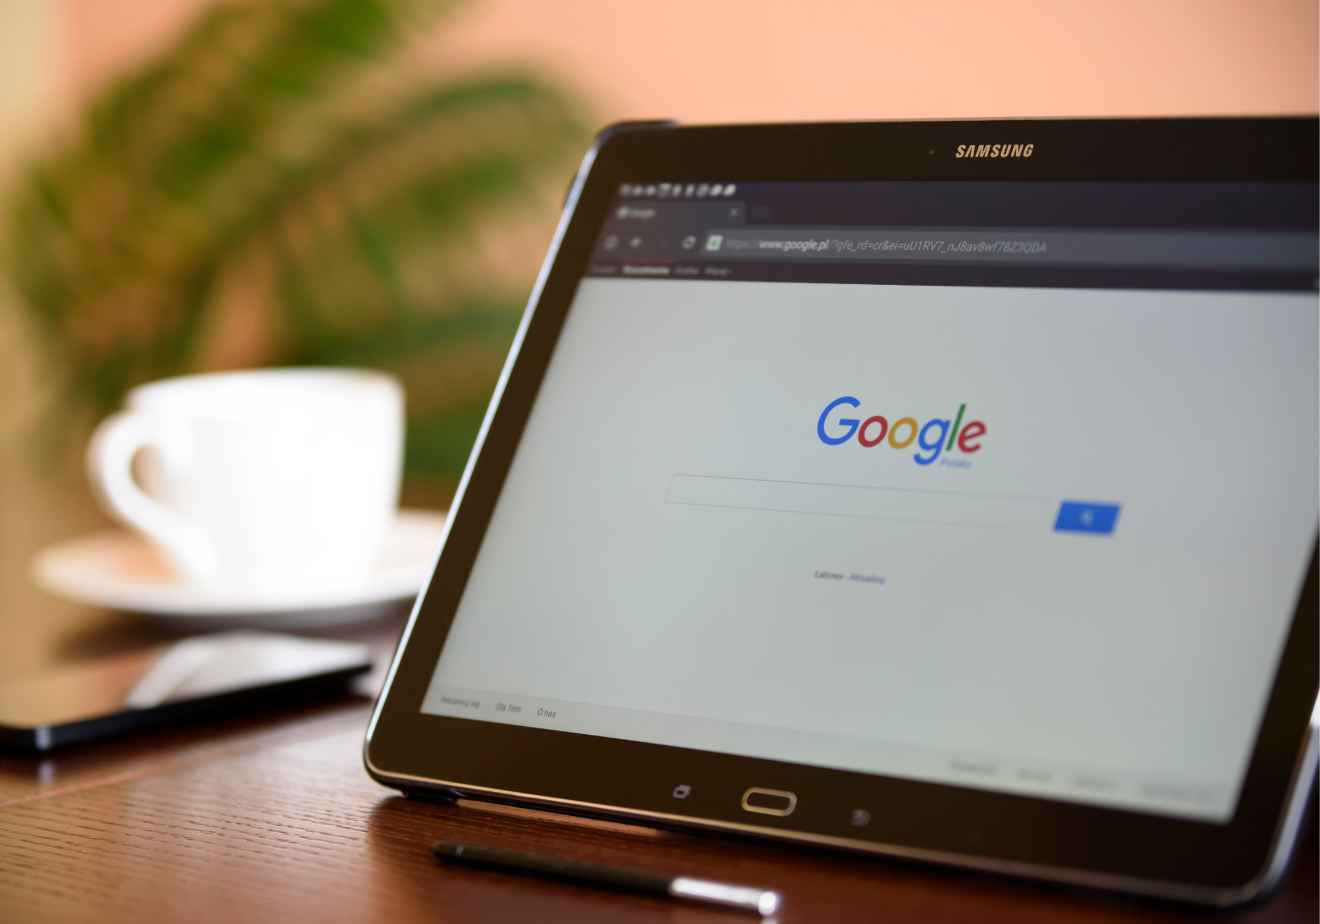 Vemos una imagen de una tablet con el buscador Google, compañía que tiene una estrategia unificada en referencia a ejemplos de misión de una empresa. 